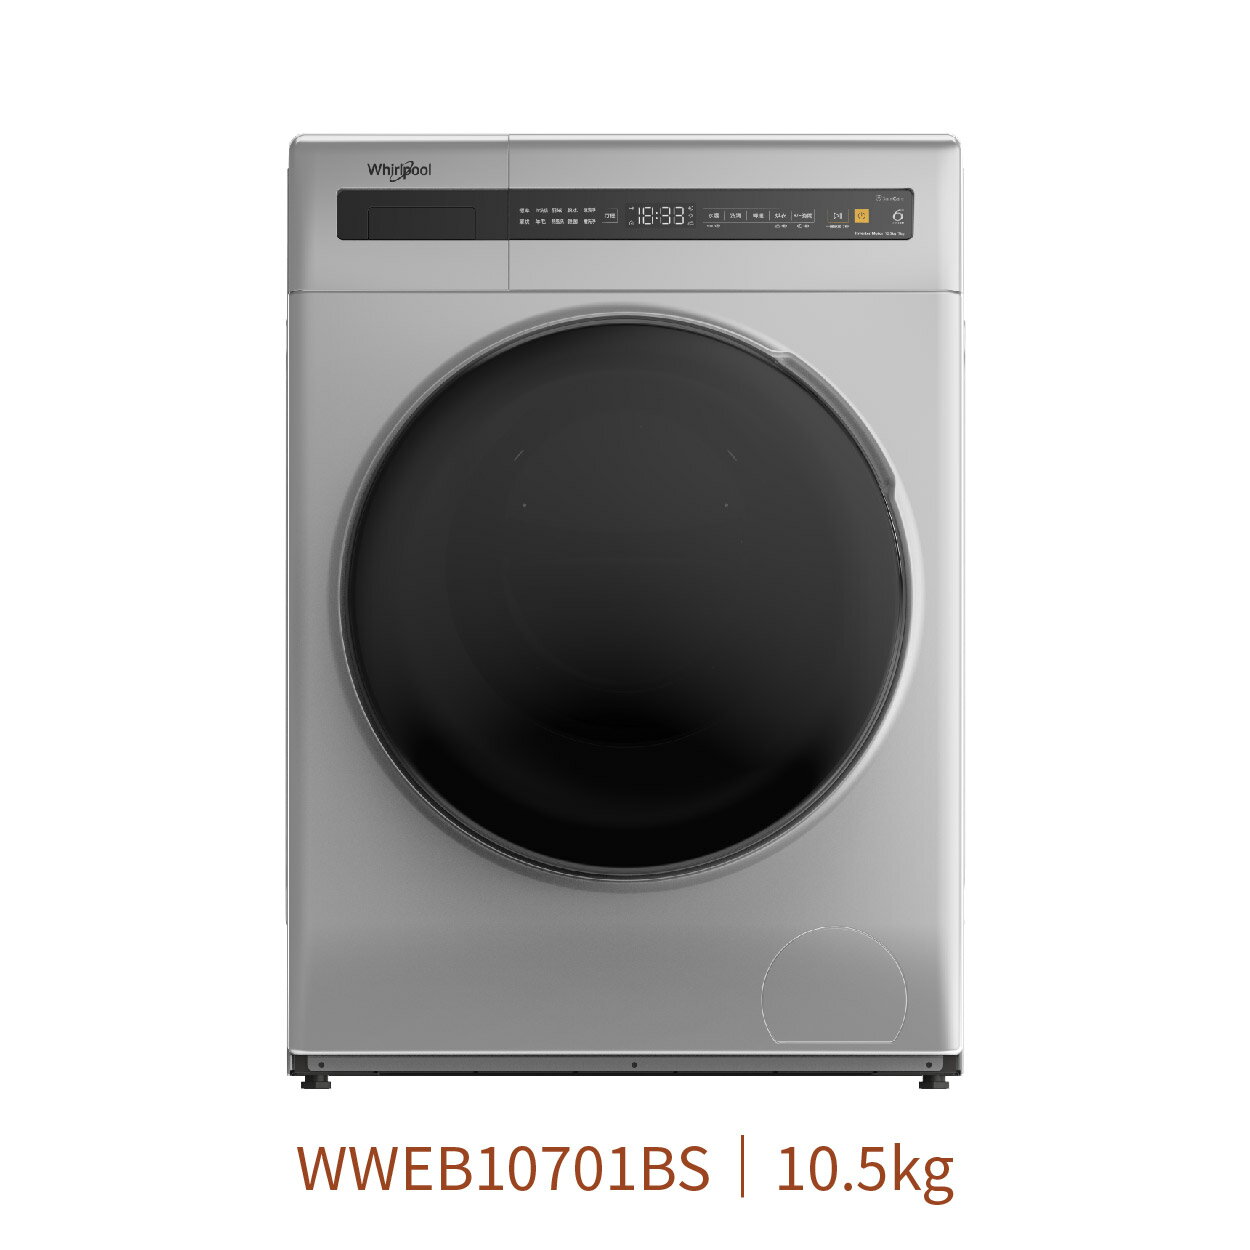 【點數10%回饋】惠而浦 WWEB10701BS 10.5公斤Essential Clean洗脫烘 變頻滾筒洗衣機 銀色